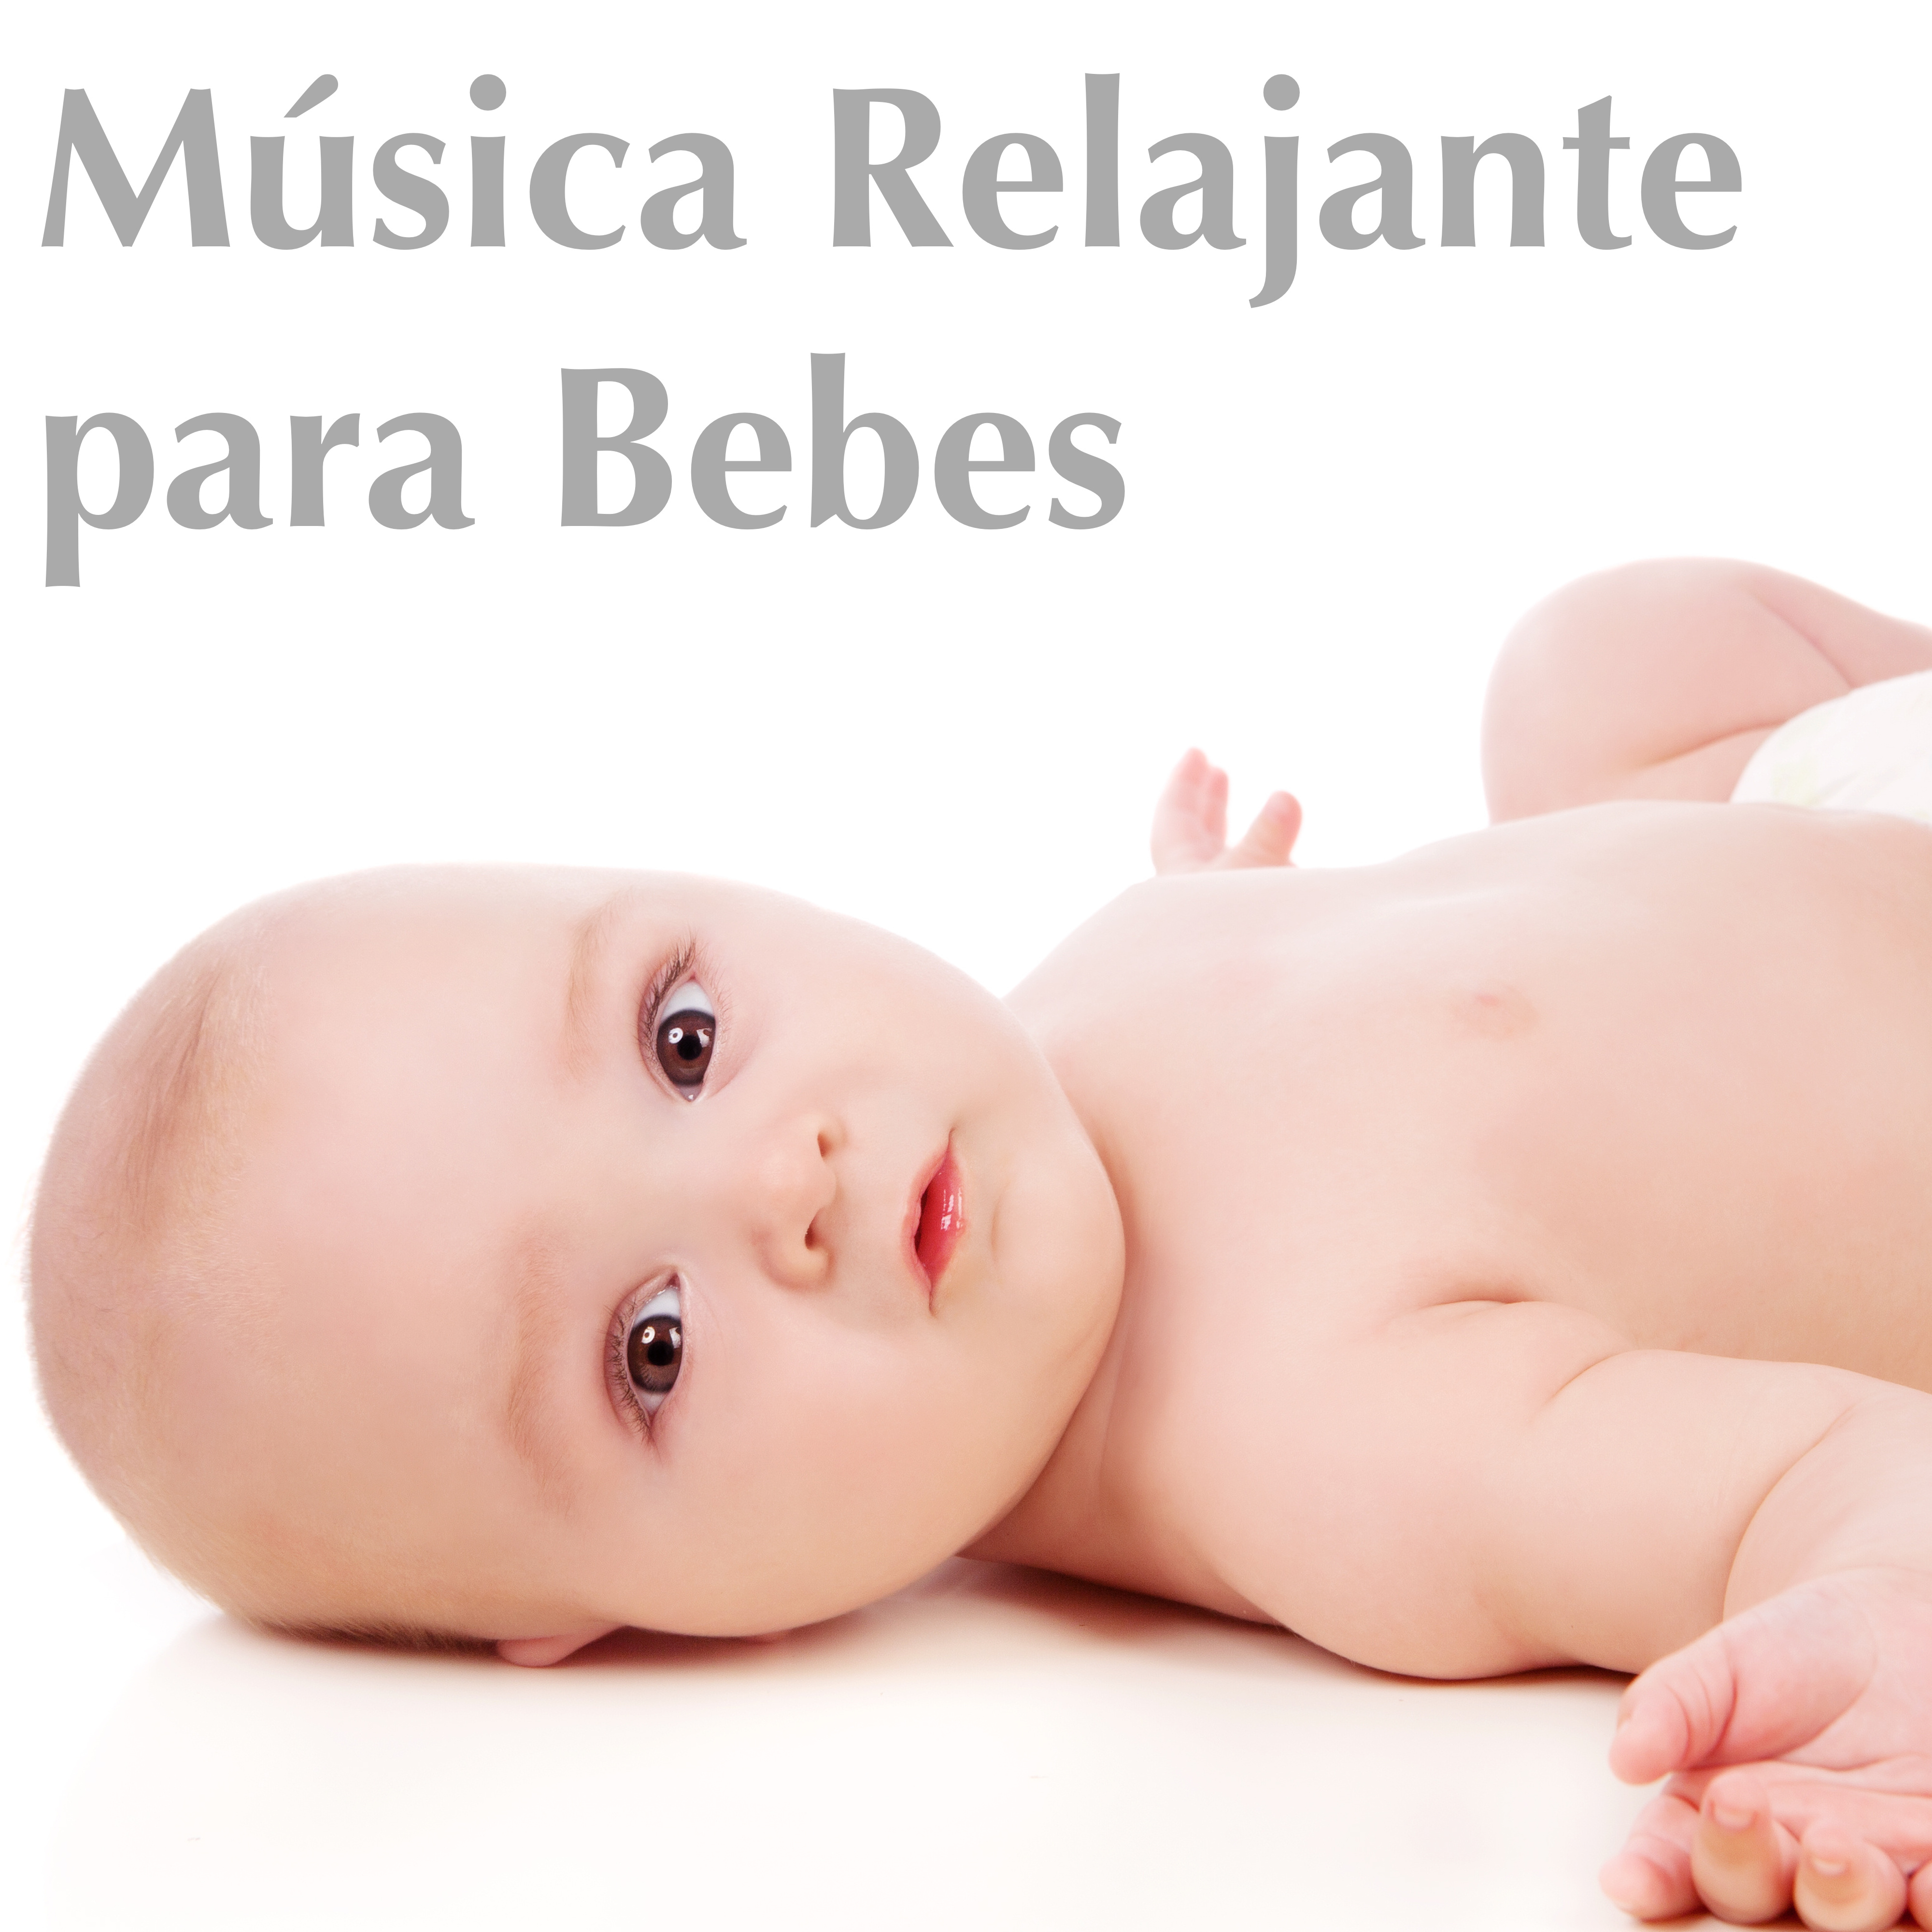 Música Relajante para Bebes: Musicoterapia para Infantes, Canciones para Calmar los Niños y Dormir Bien